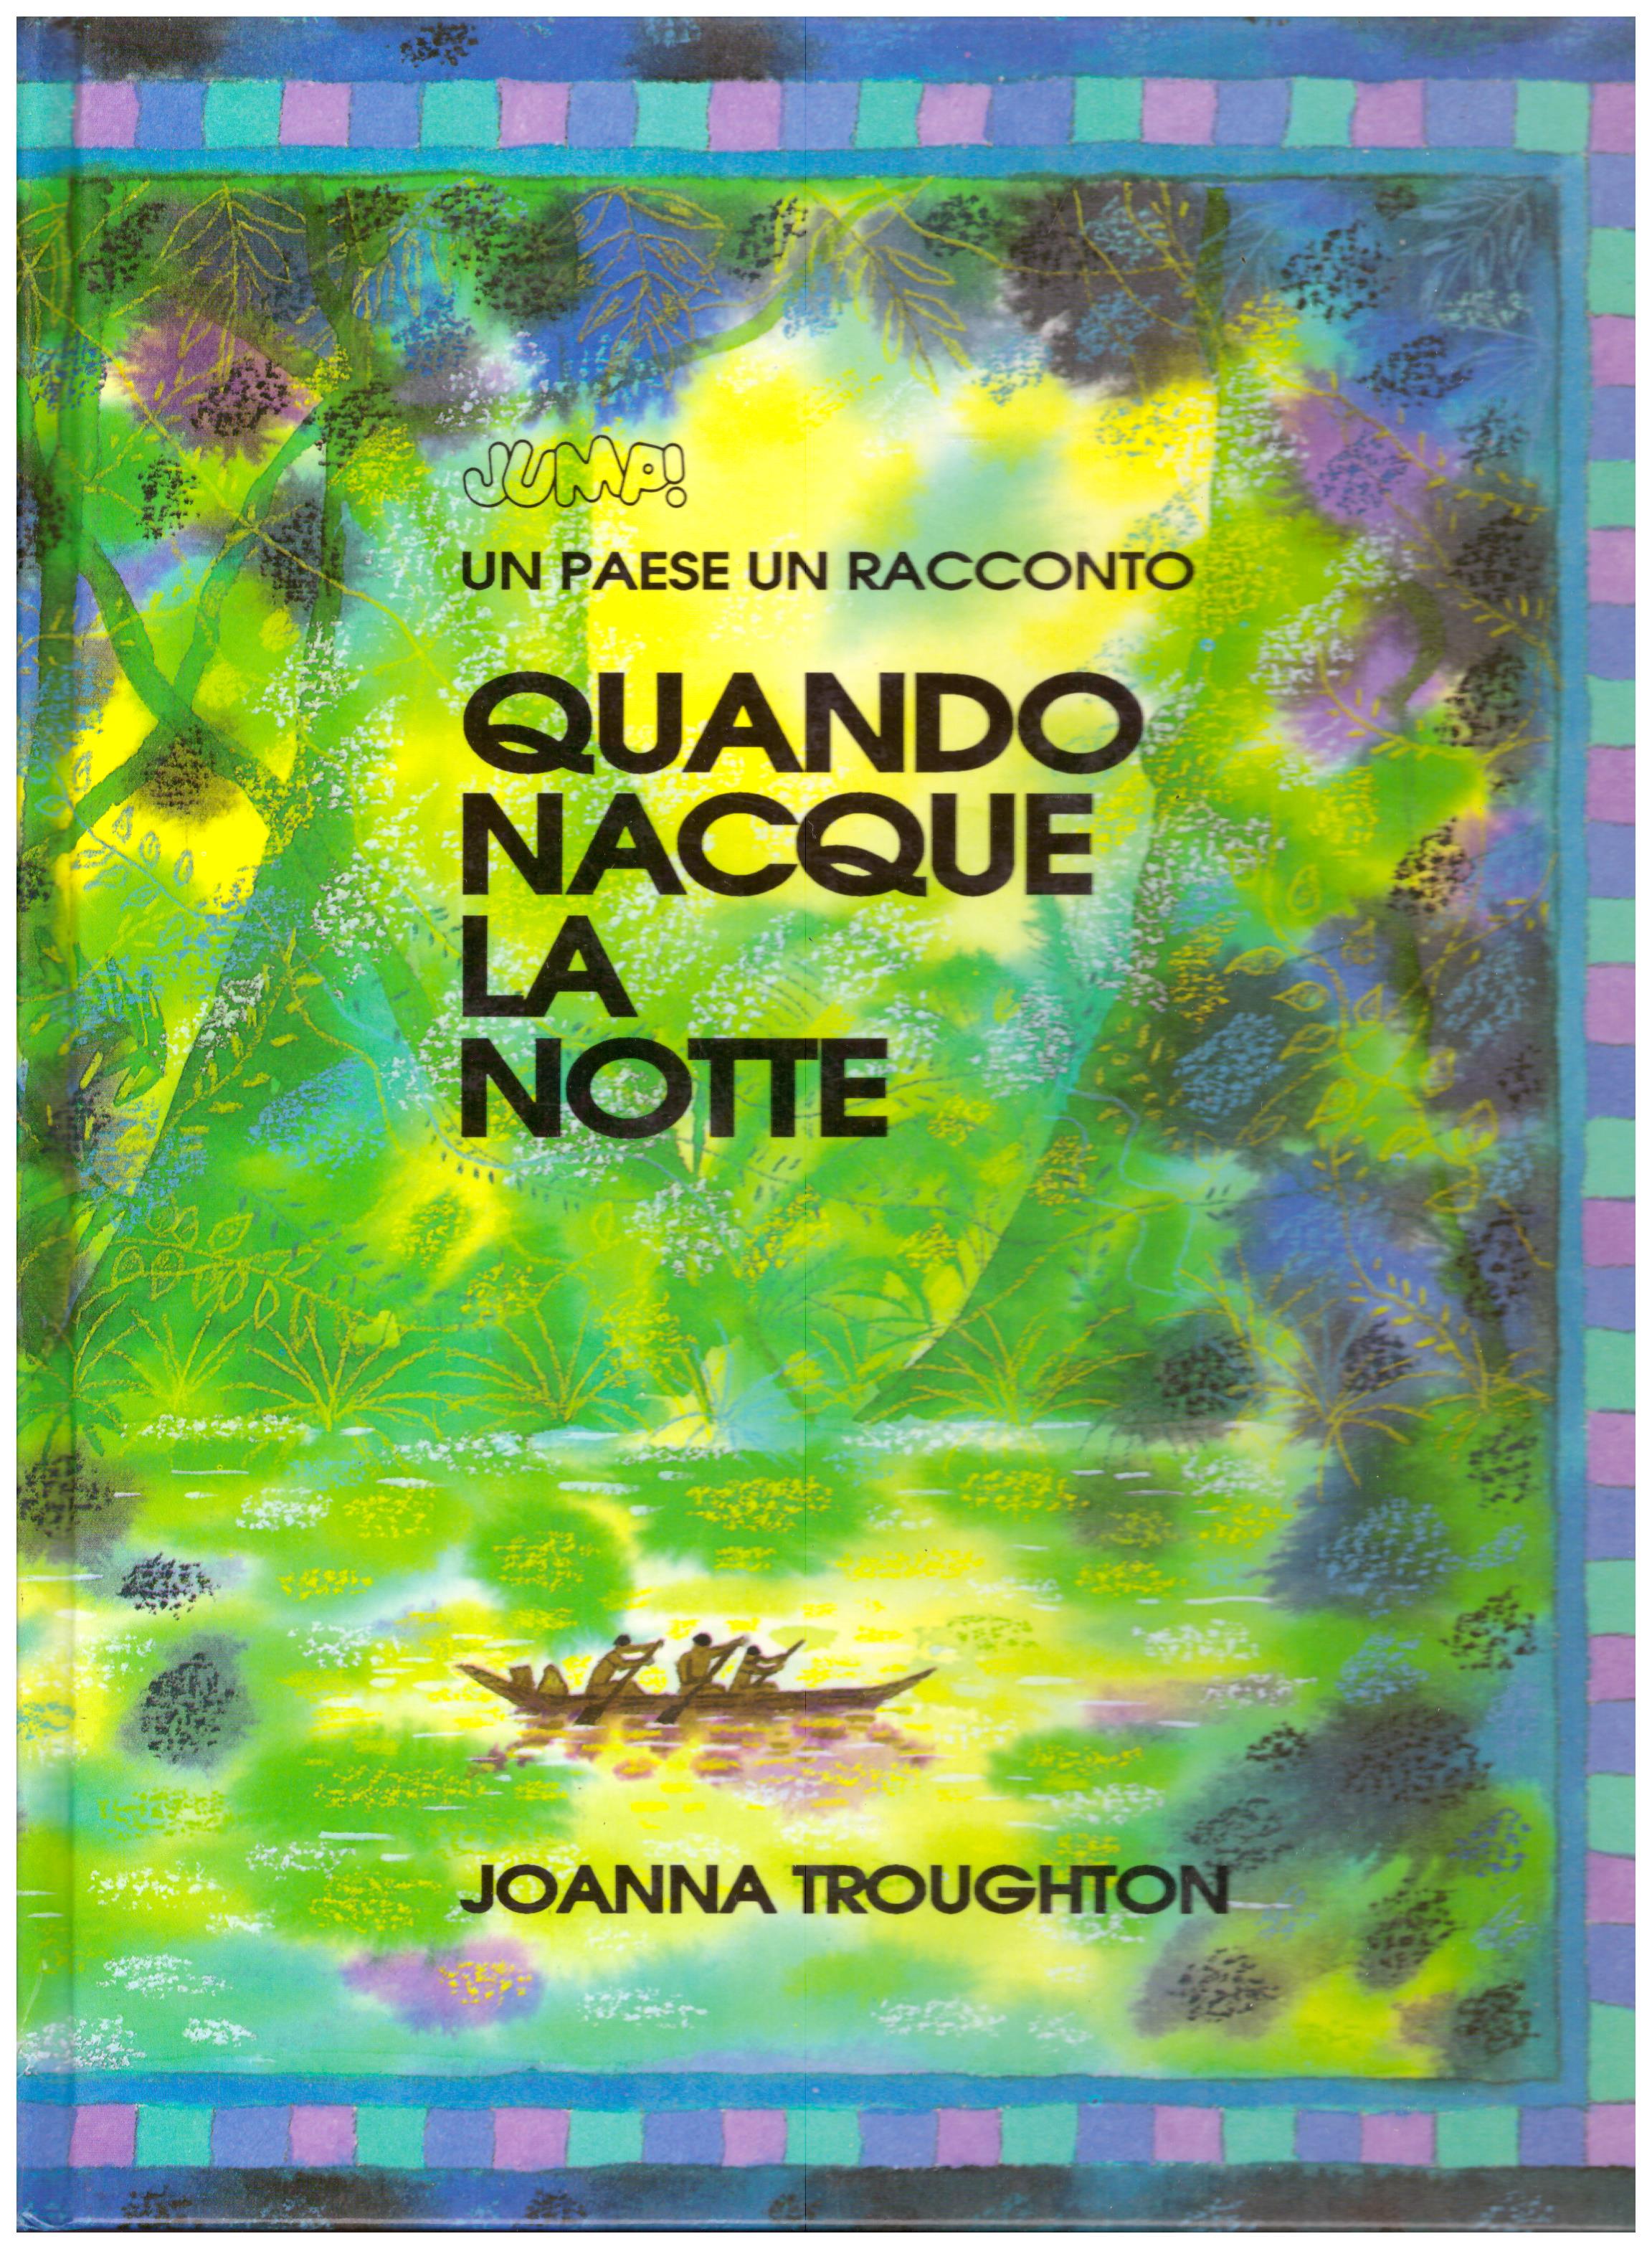 Titolo: Quando nacque la notte     Autore: Joanna Troughton     Editore: Lito Editore